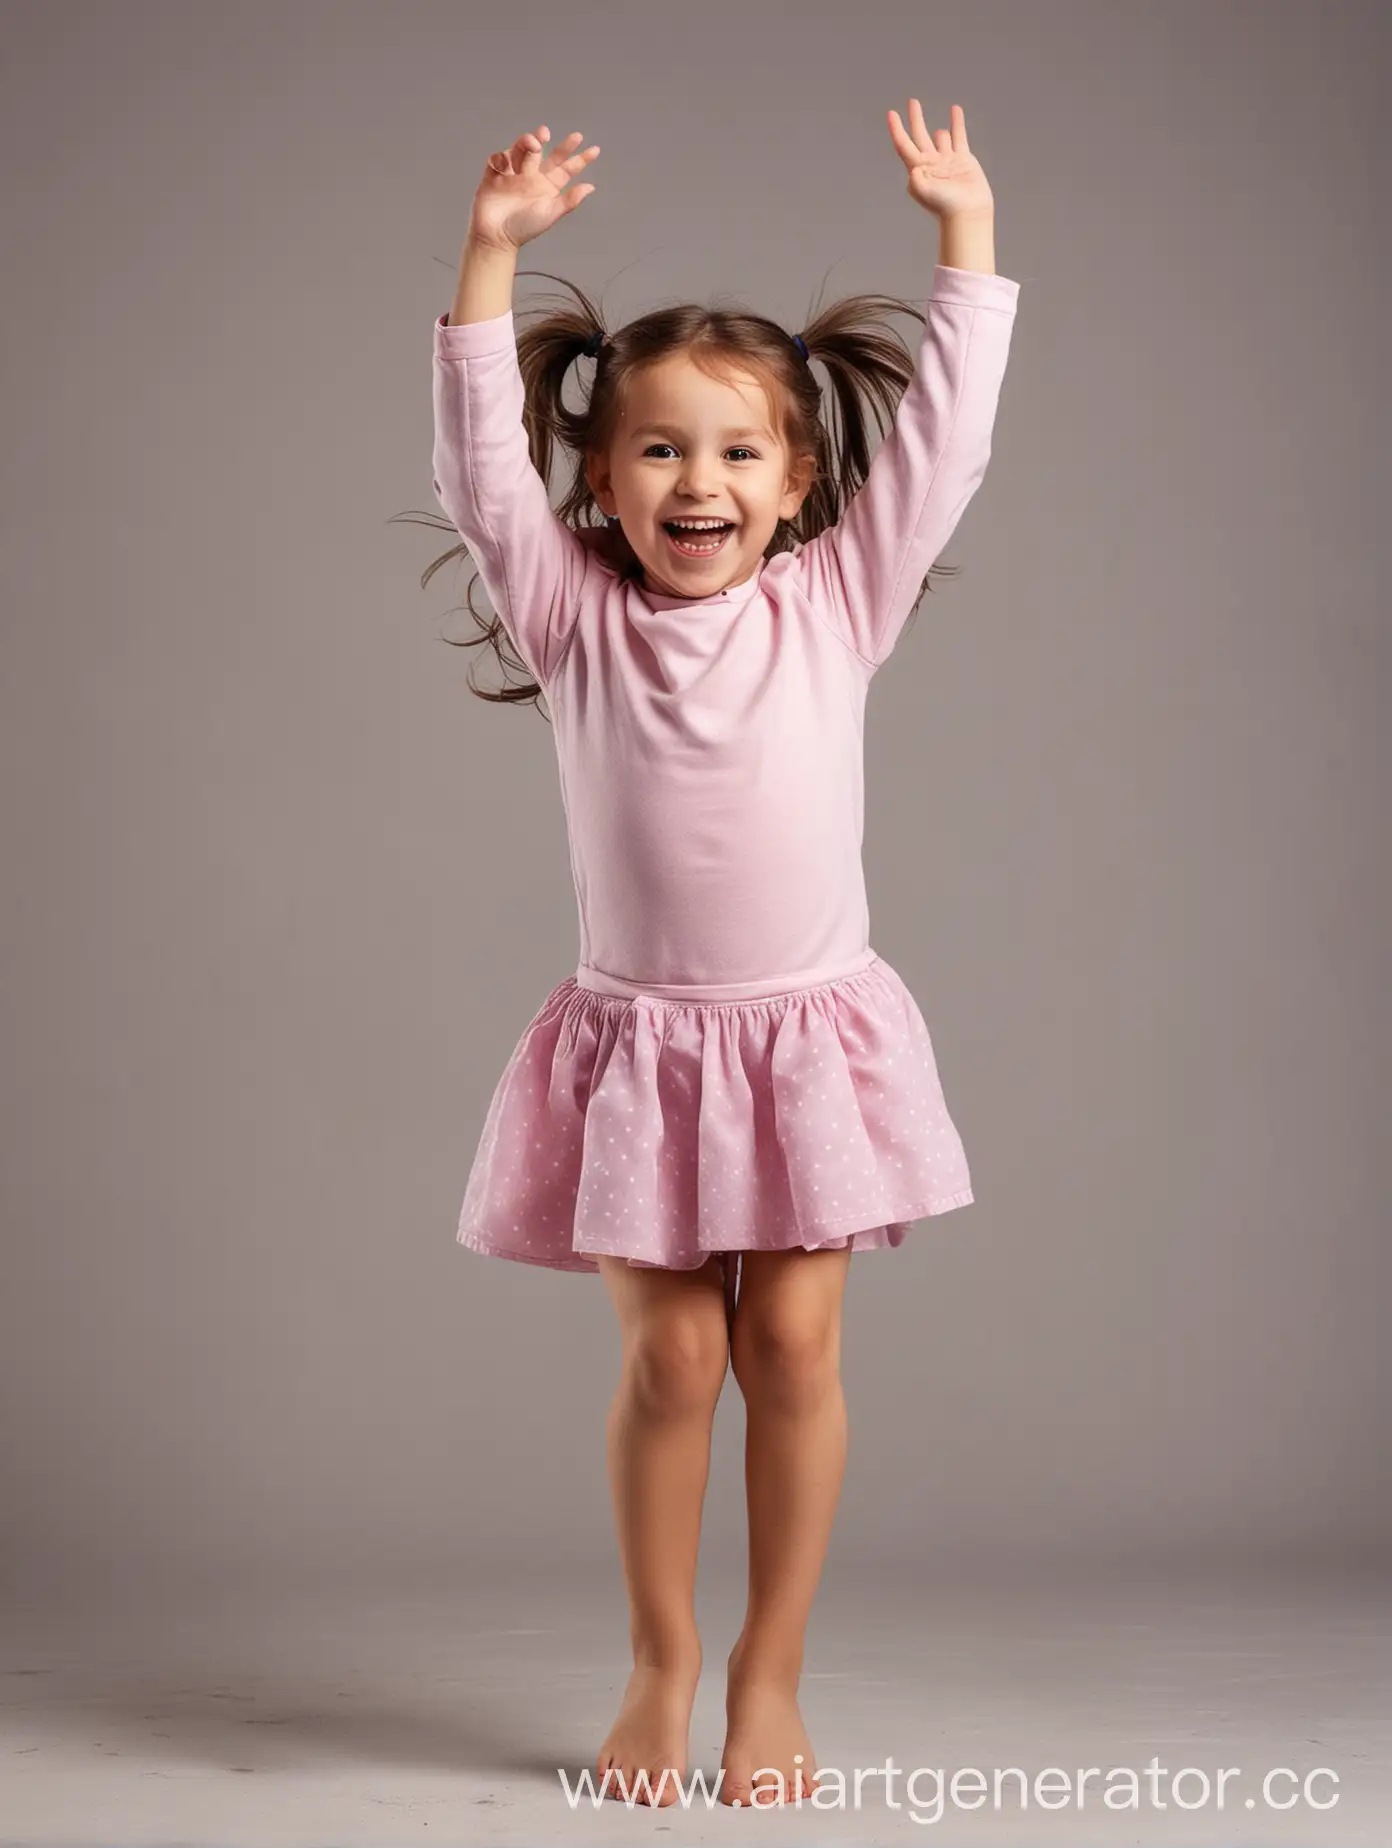 Девочка 4 лет весёлая прыгает с руками вверх